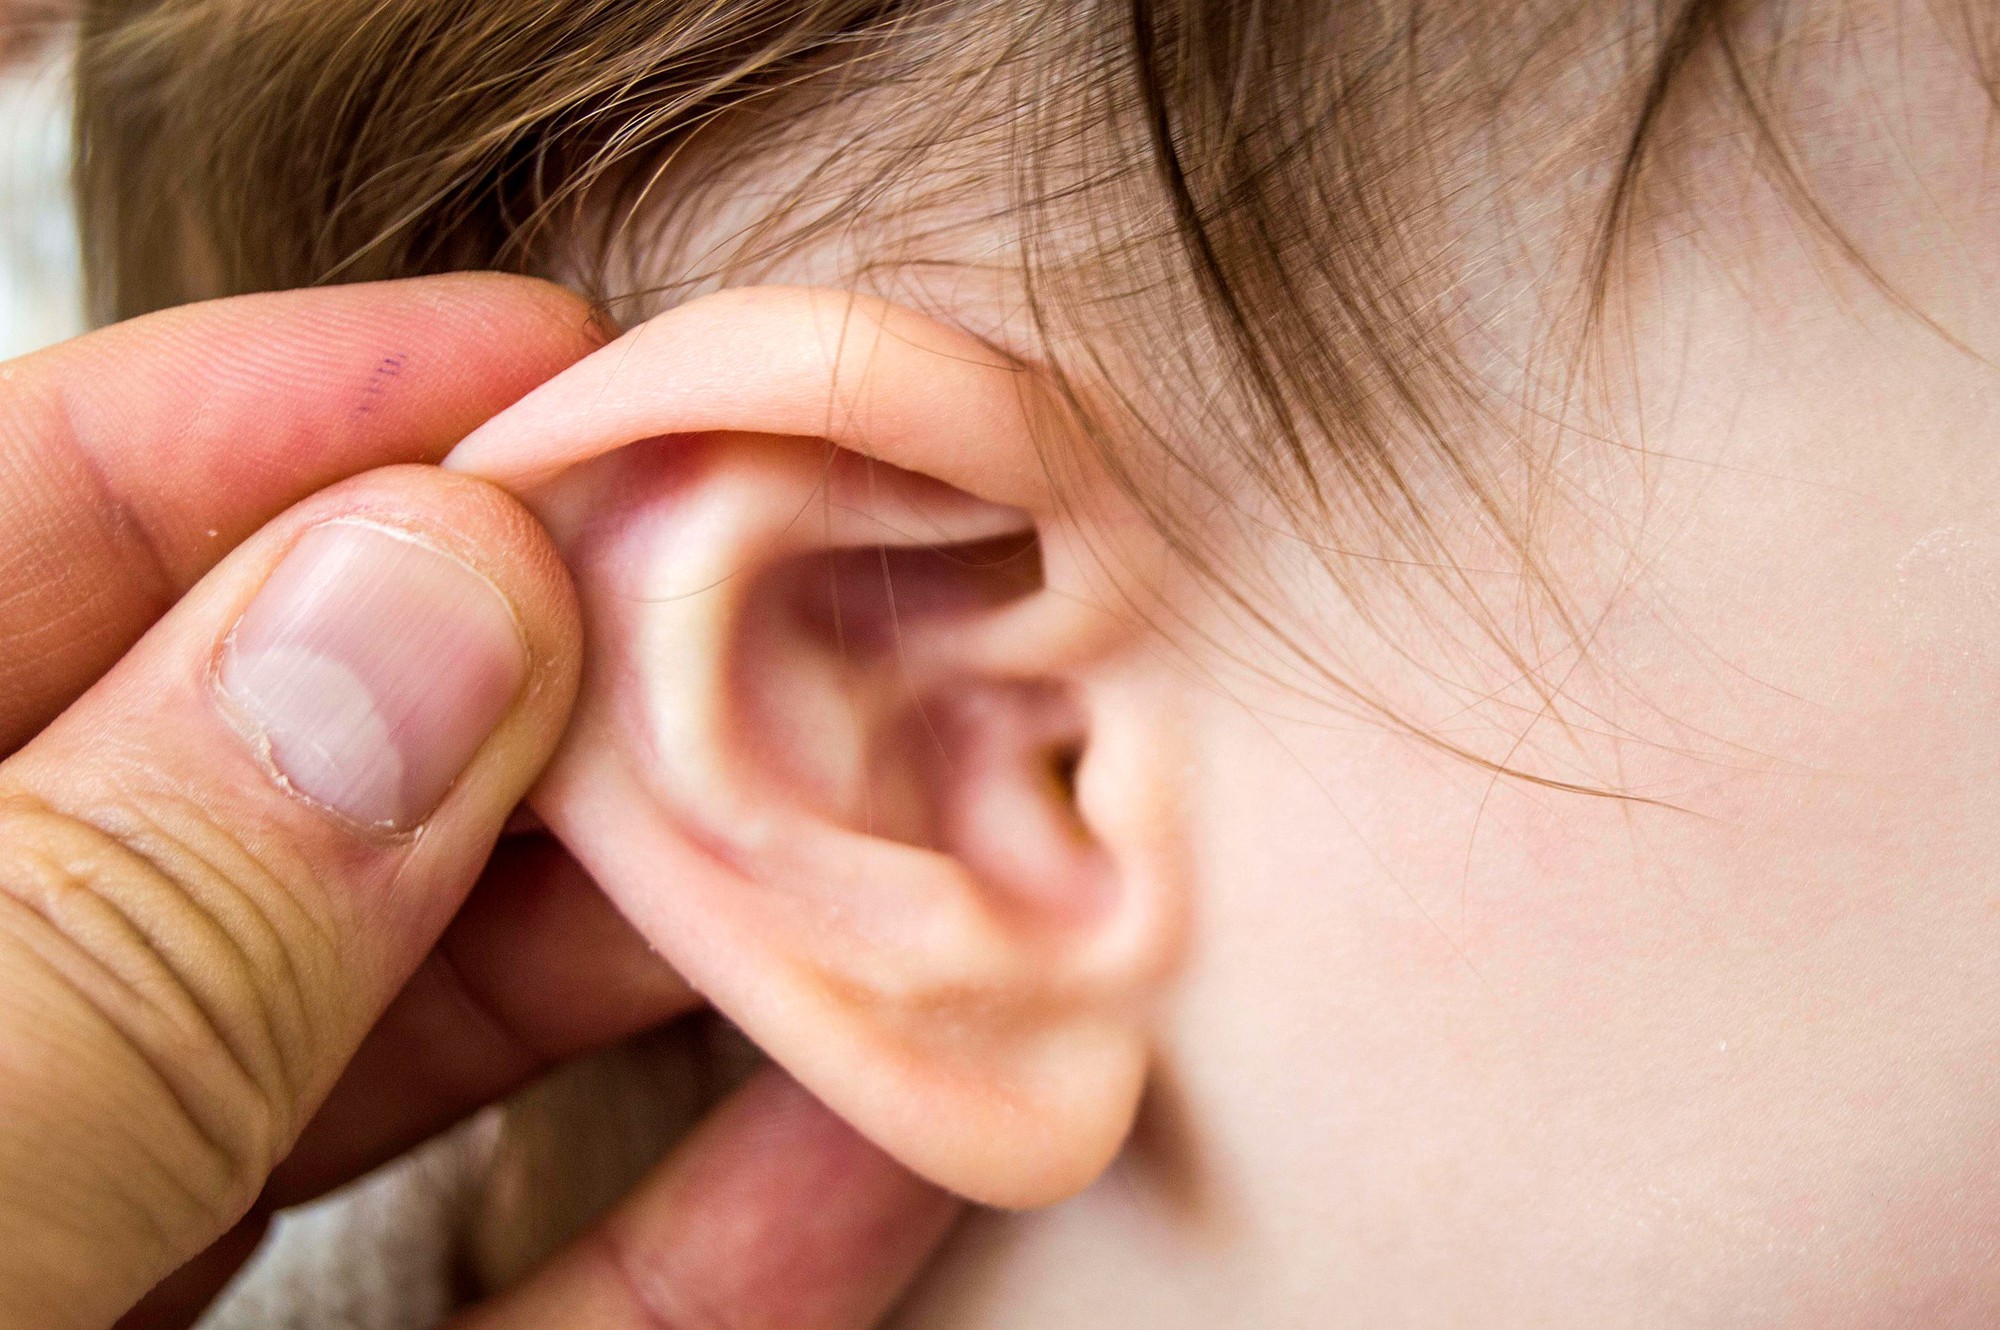 Đeo tai nghe nhiều có những ảnh hưởng tiêu cực ra sao? Sau đây là câu trả lời cho bạn - ảnh 5